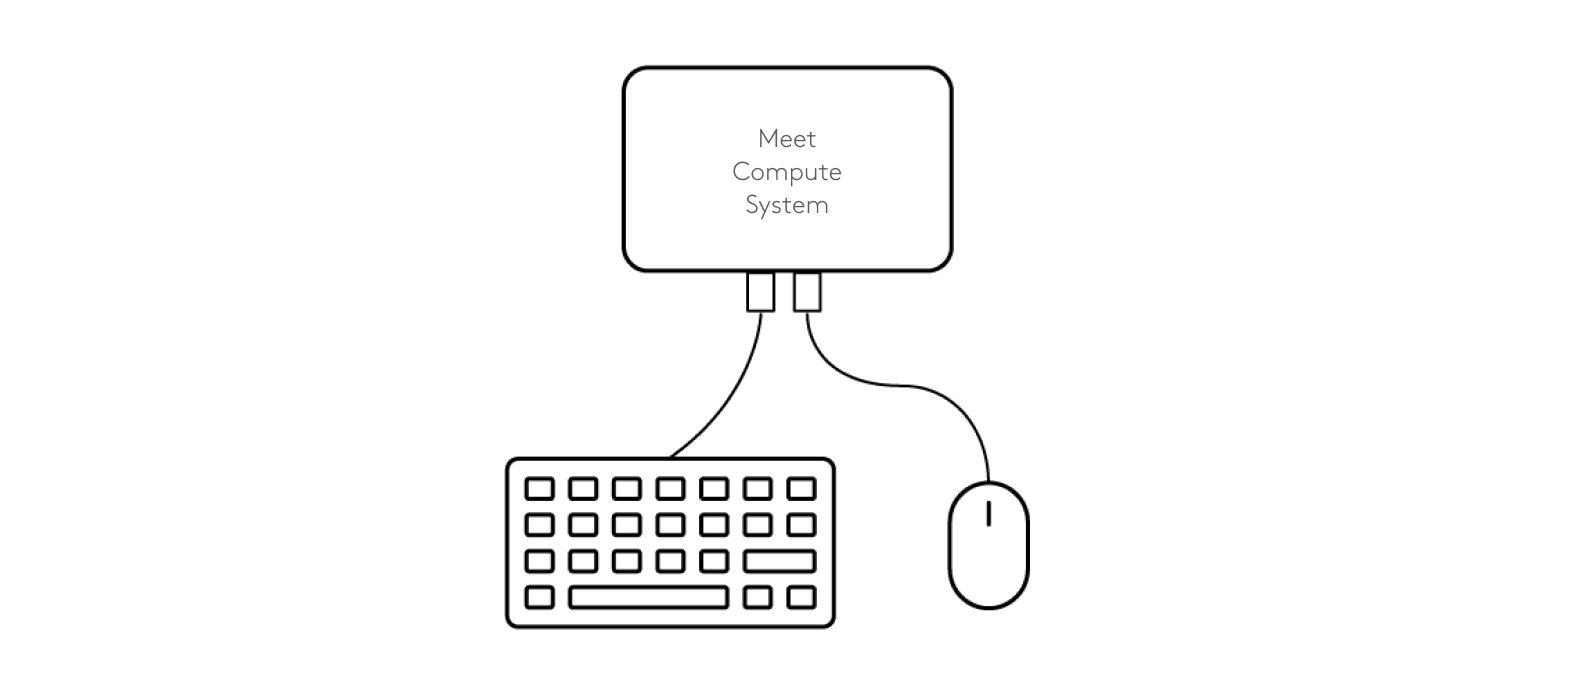 將鍵盤和滑鼠連接到會議運算系統的連接示意圖